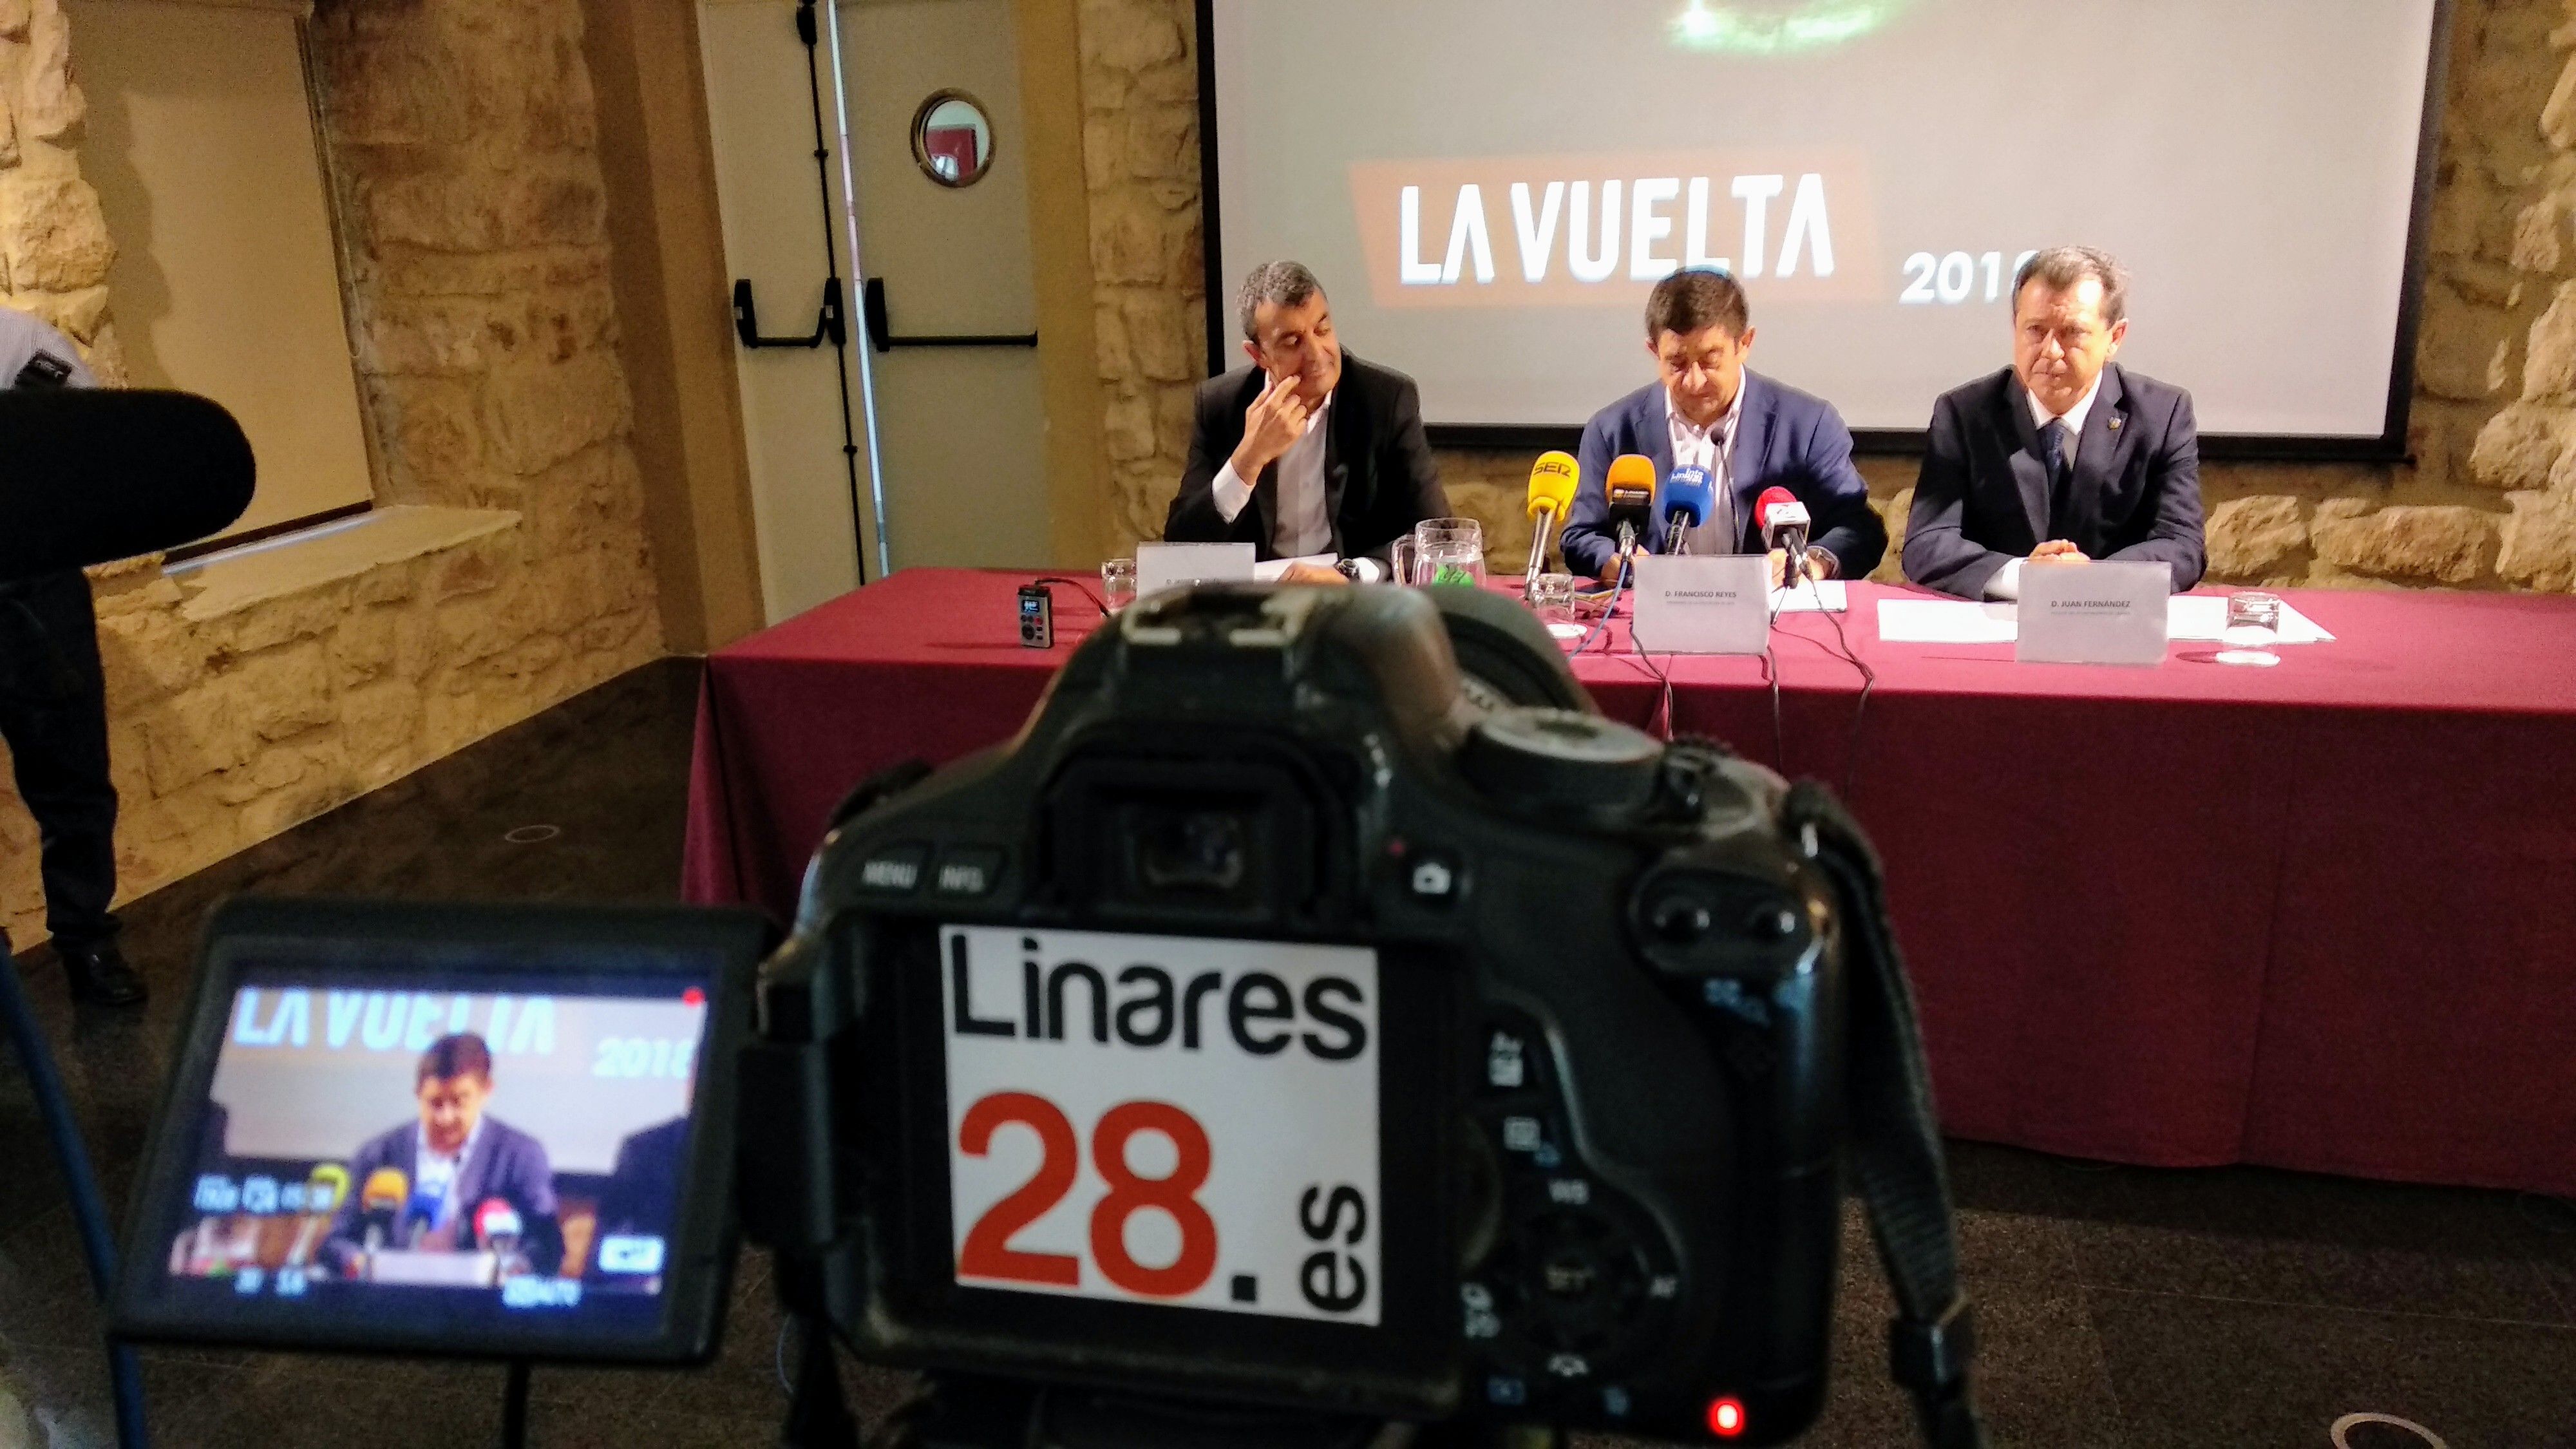 DIRECTO | Presentación etapa de Linares de la Vuelta a España 2018